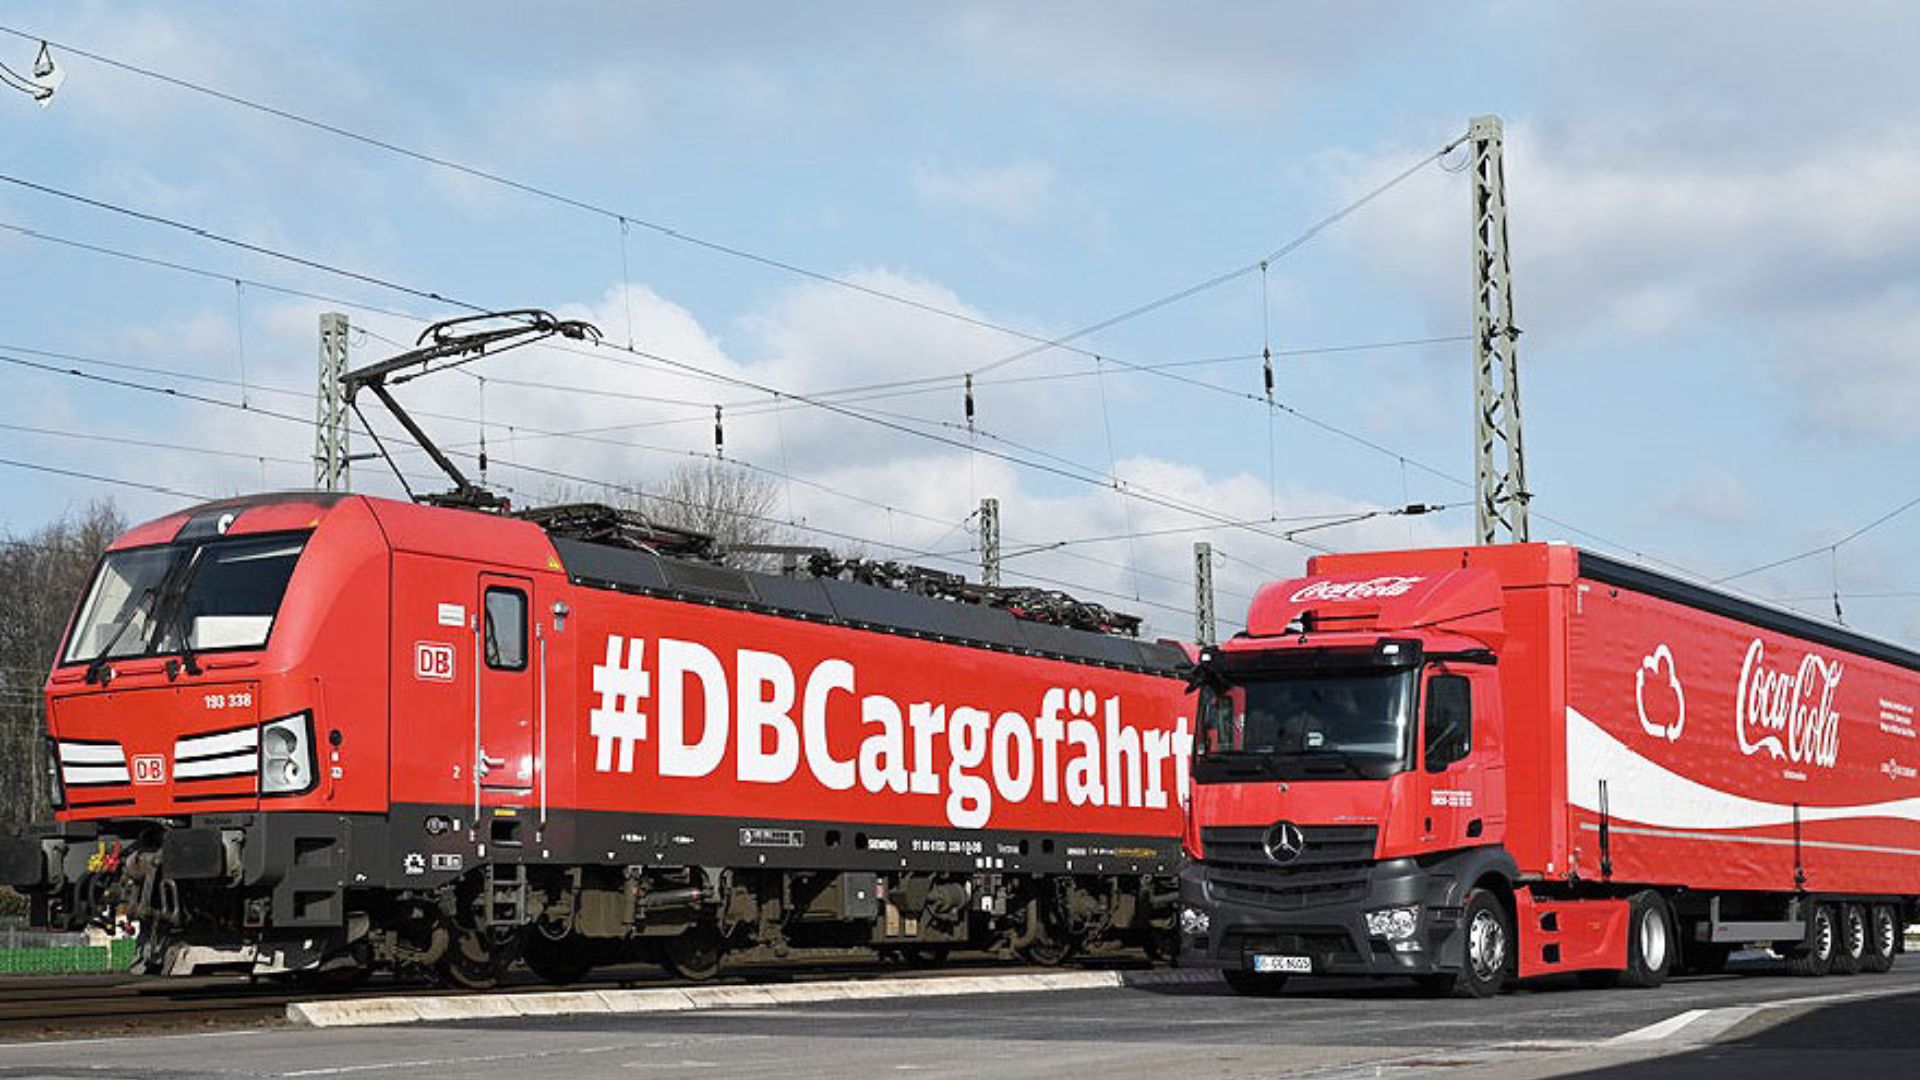 Coca-Cola Deutschland – DB Cargo